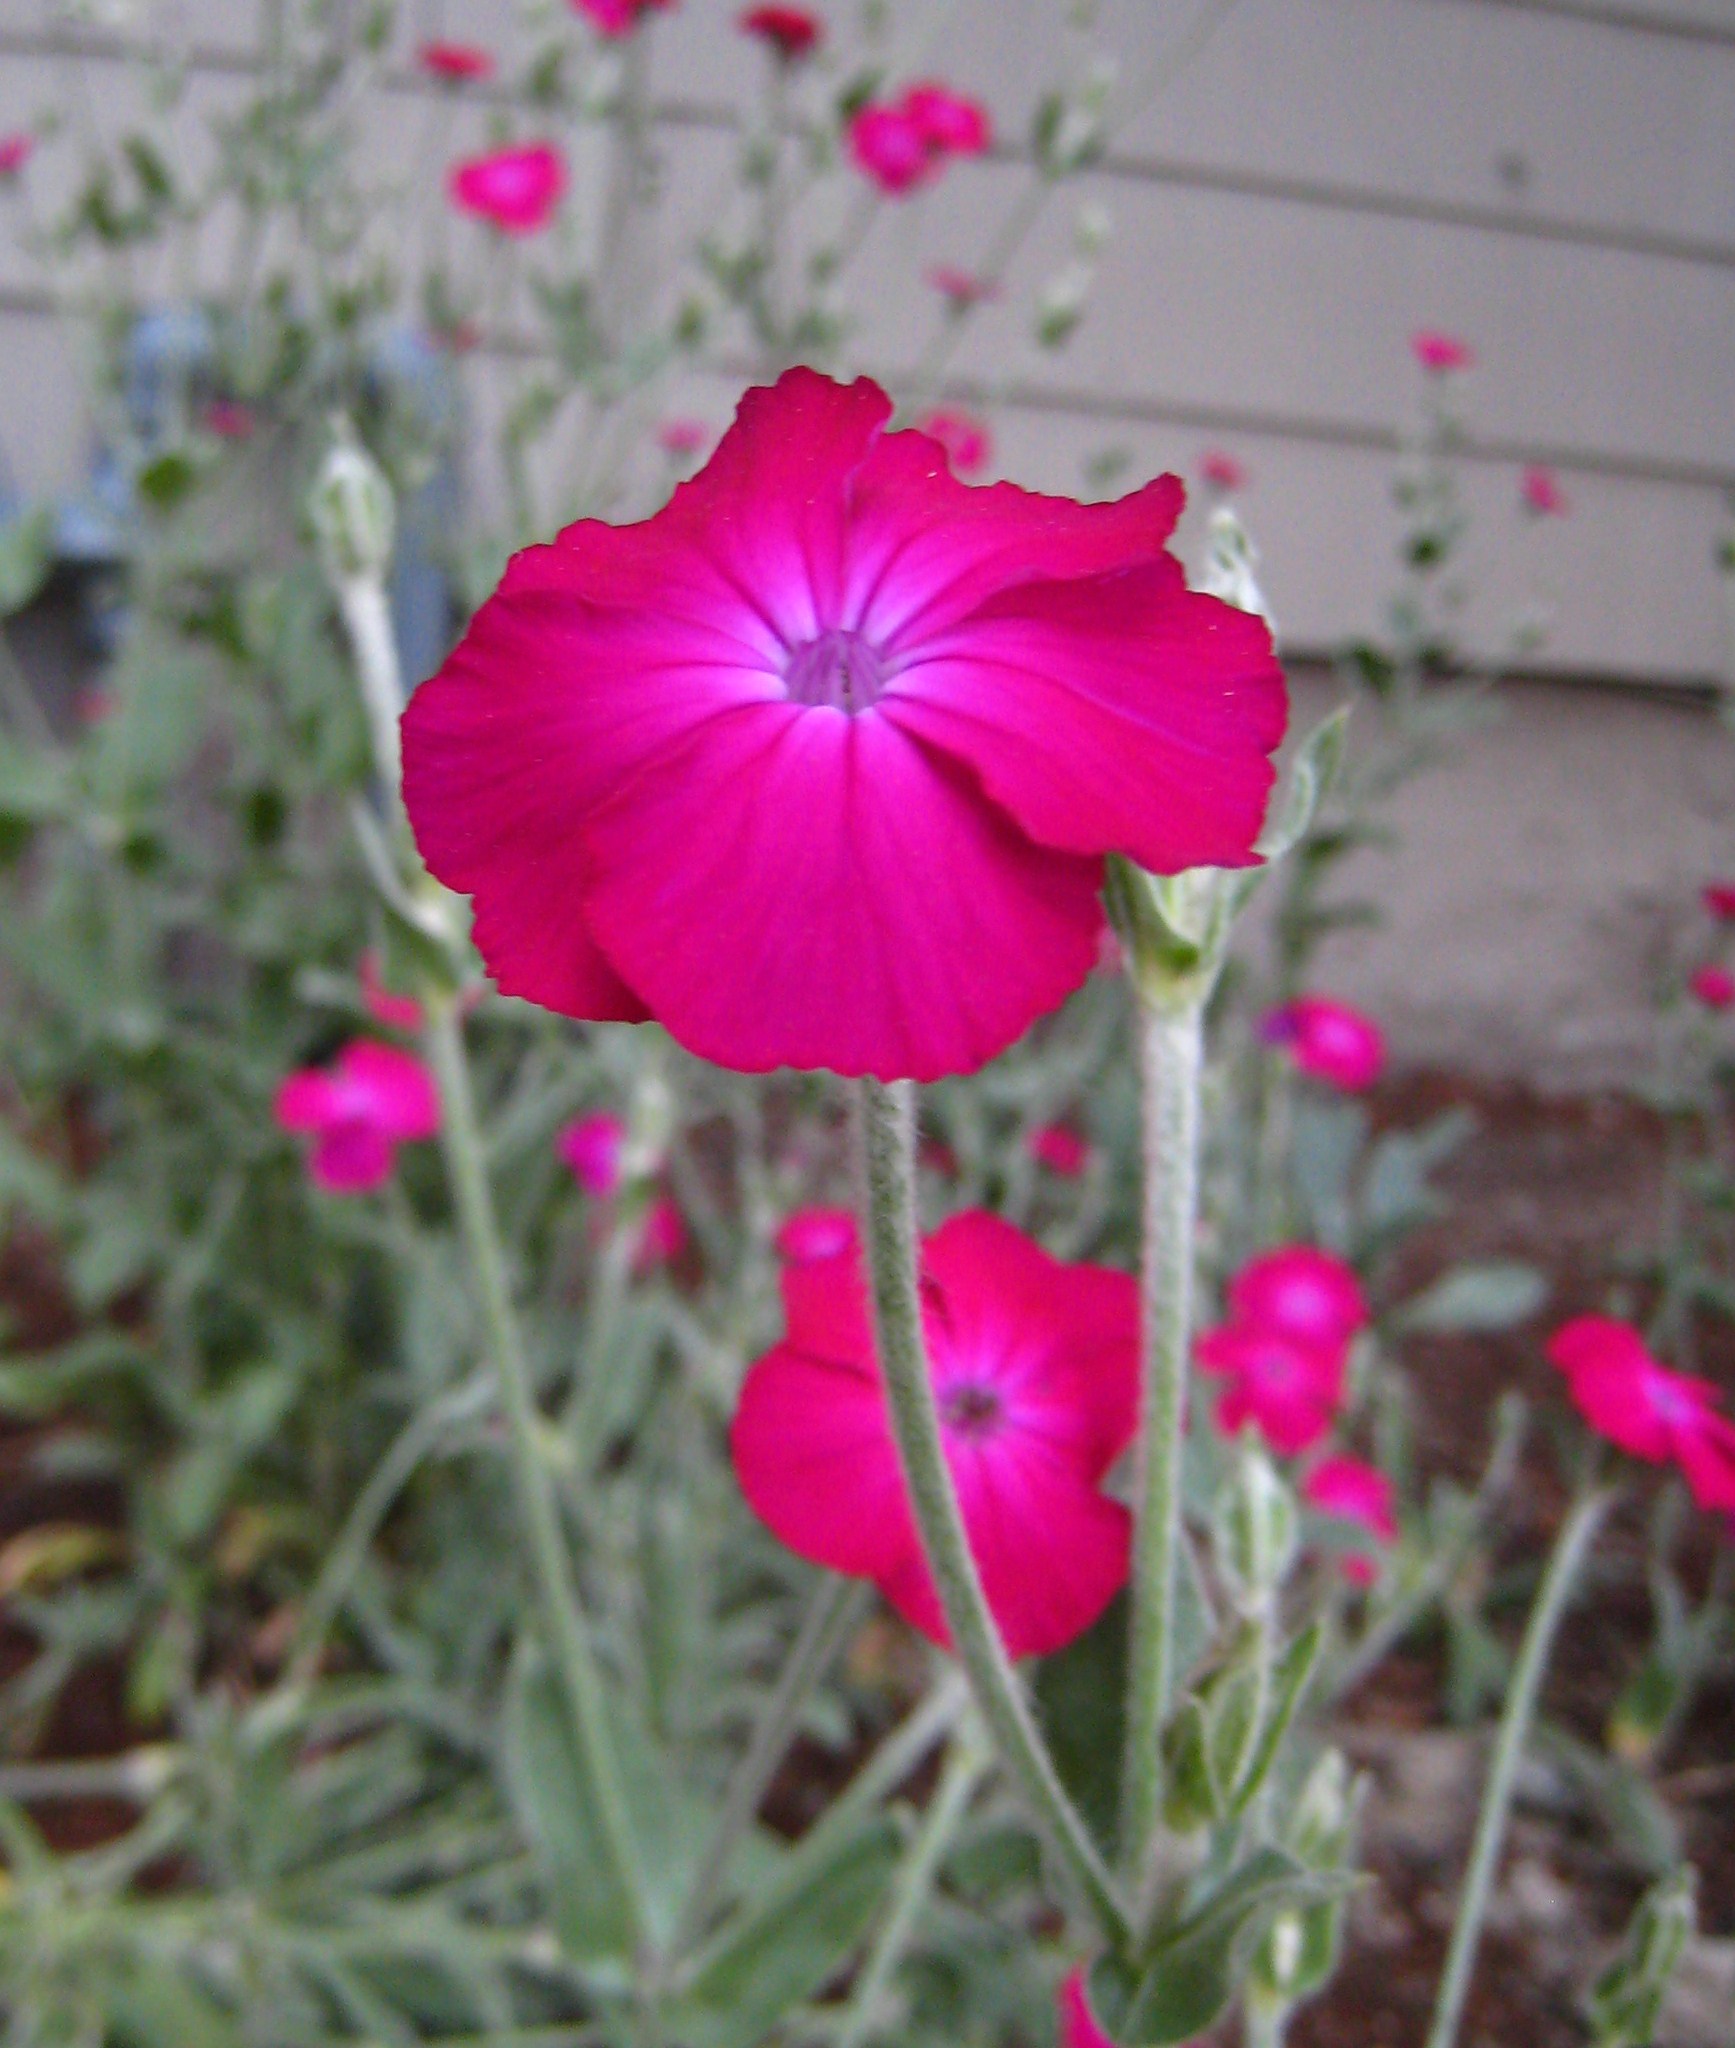 File:Dayglo pink garden flower.JPG - Wikimedia Commons